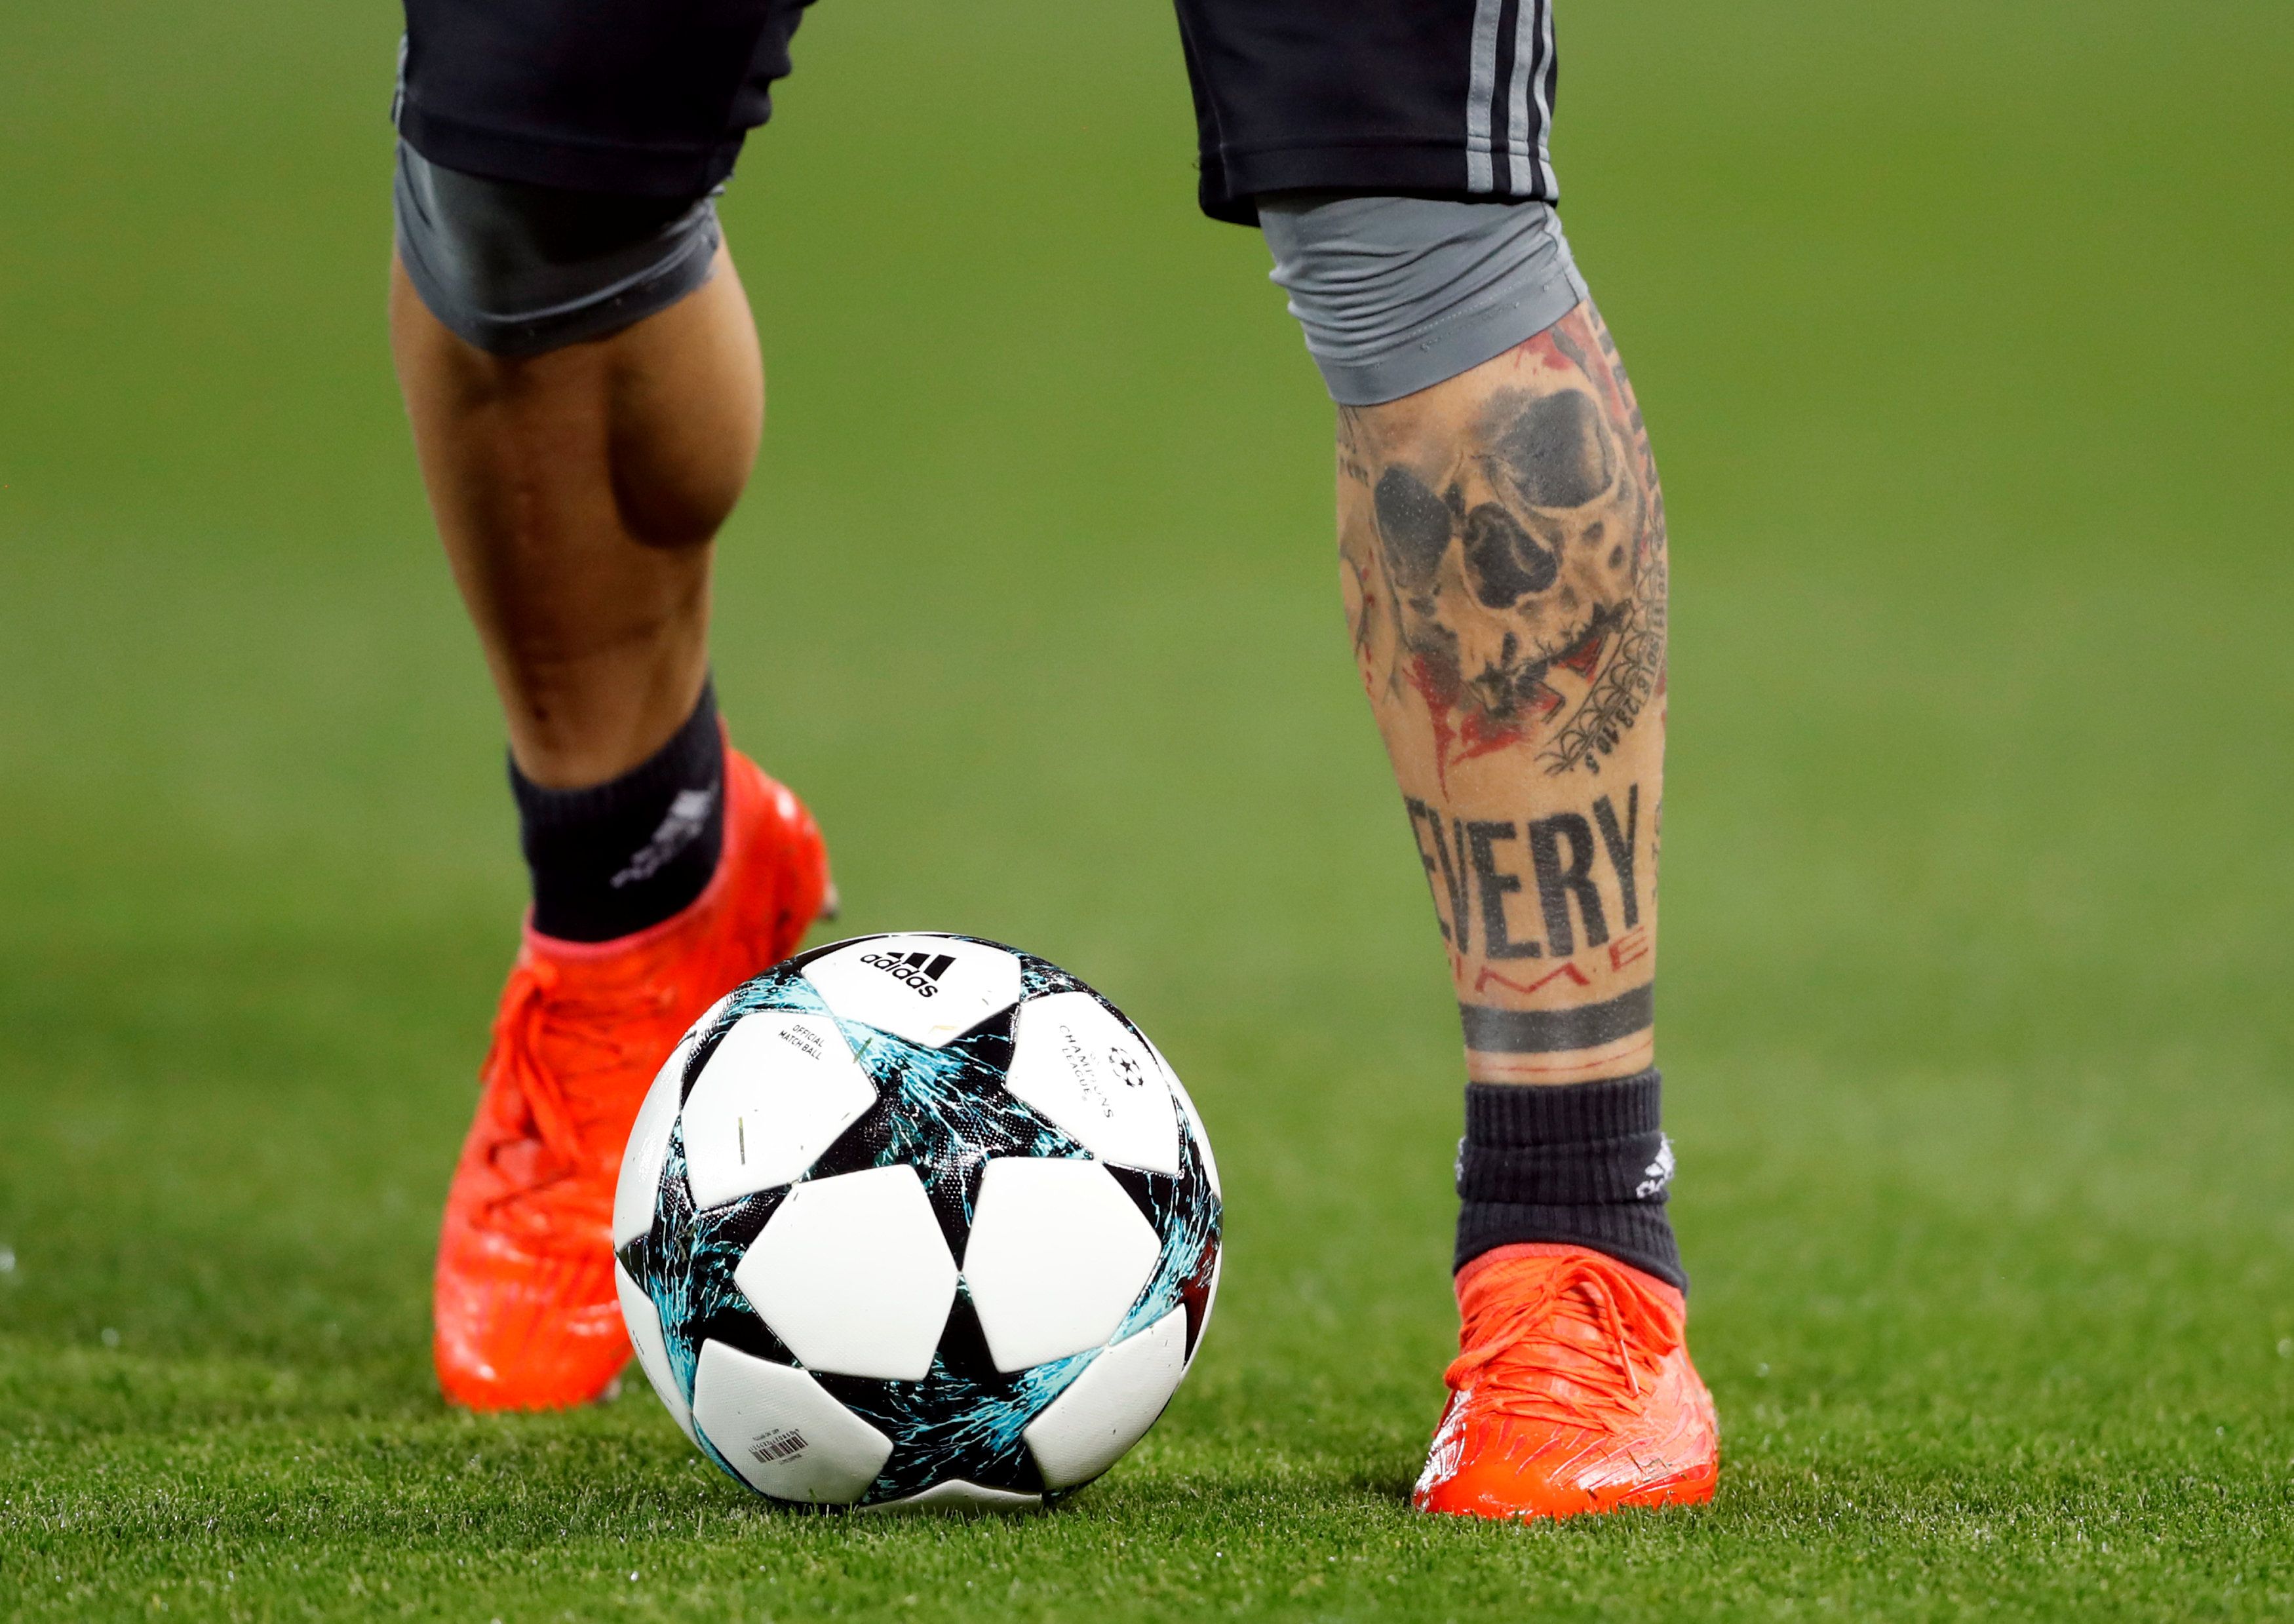 A footballer's tattoo.